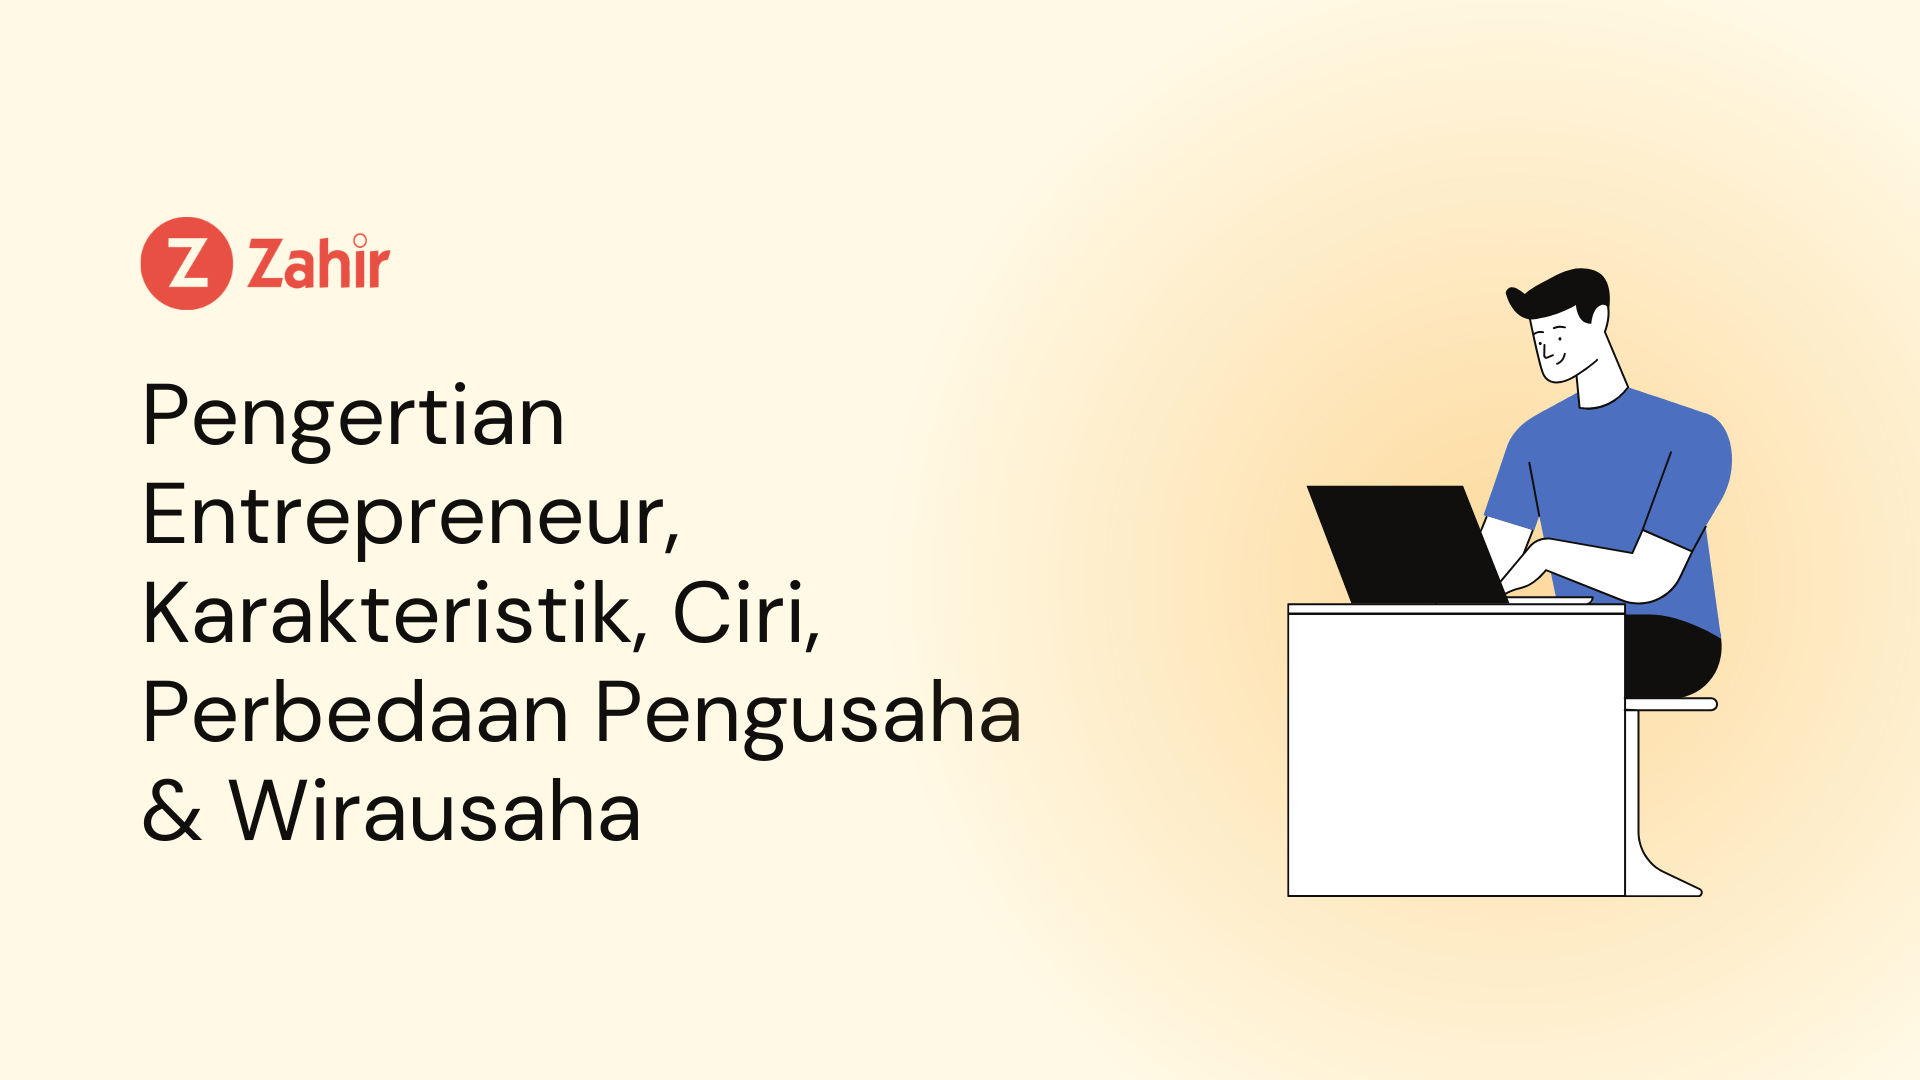 Pengertian Entrepreneur, Karakteristik, Ciri, Perbedaan Pengusaha & Wirausaha